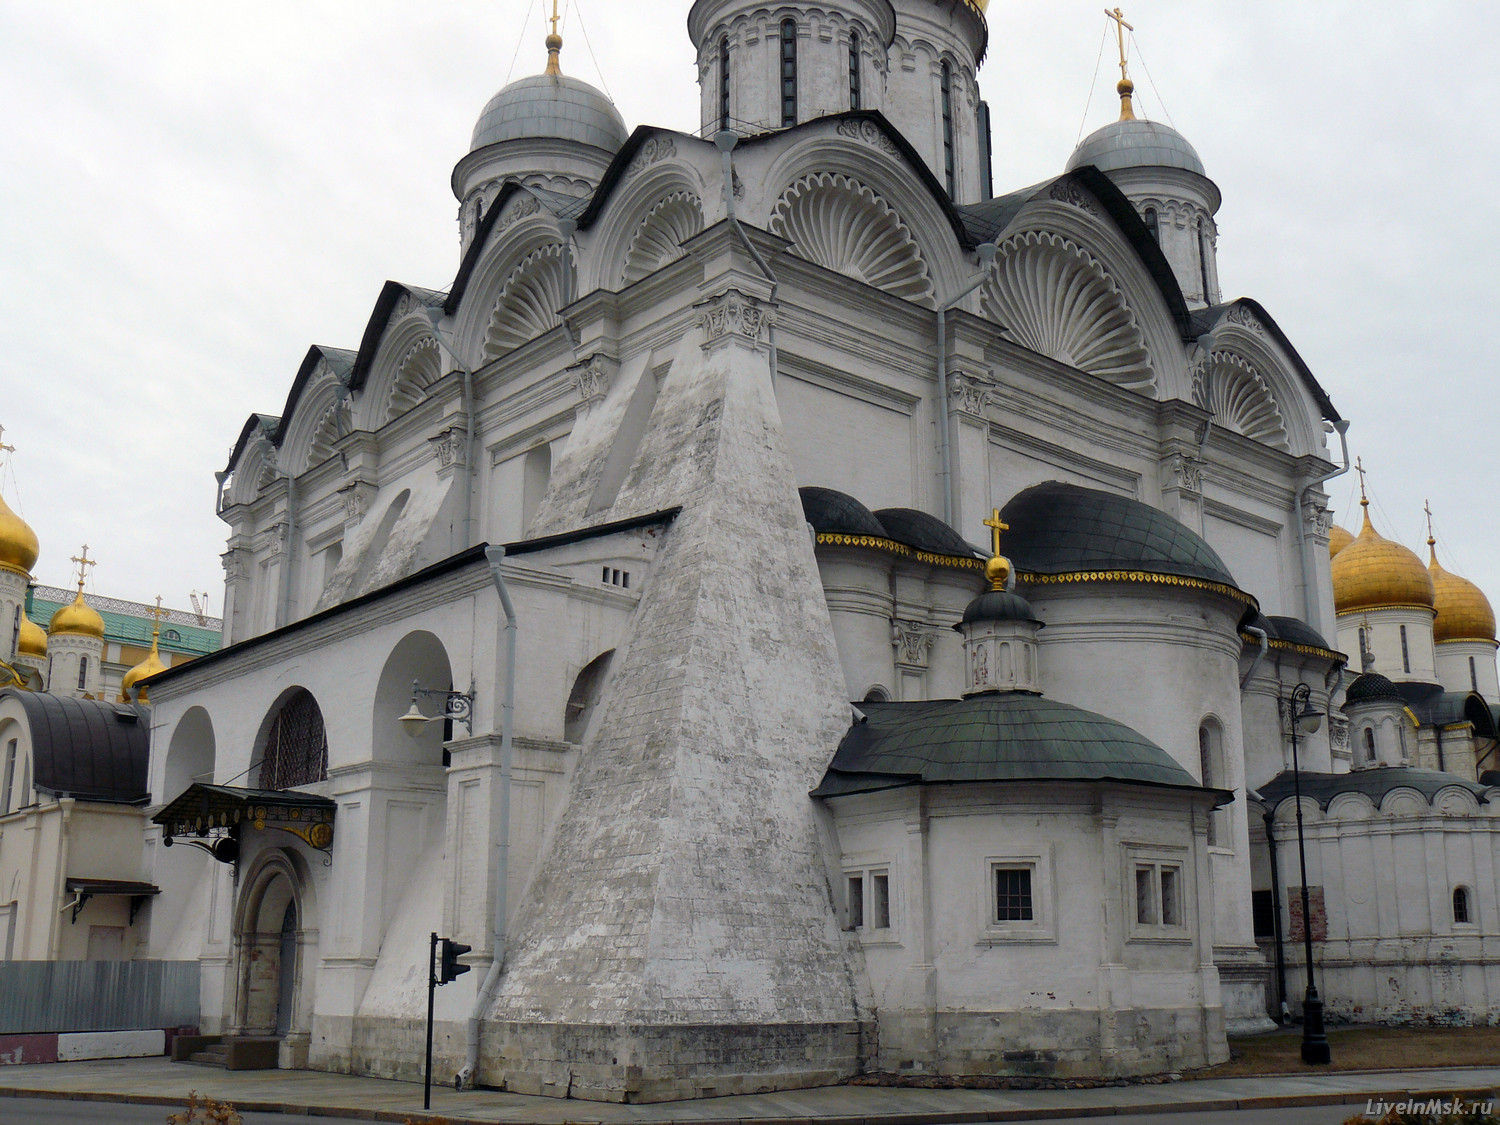 Архангельский собор Московского Кремля, фото 2014 года